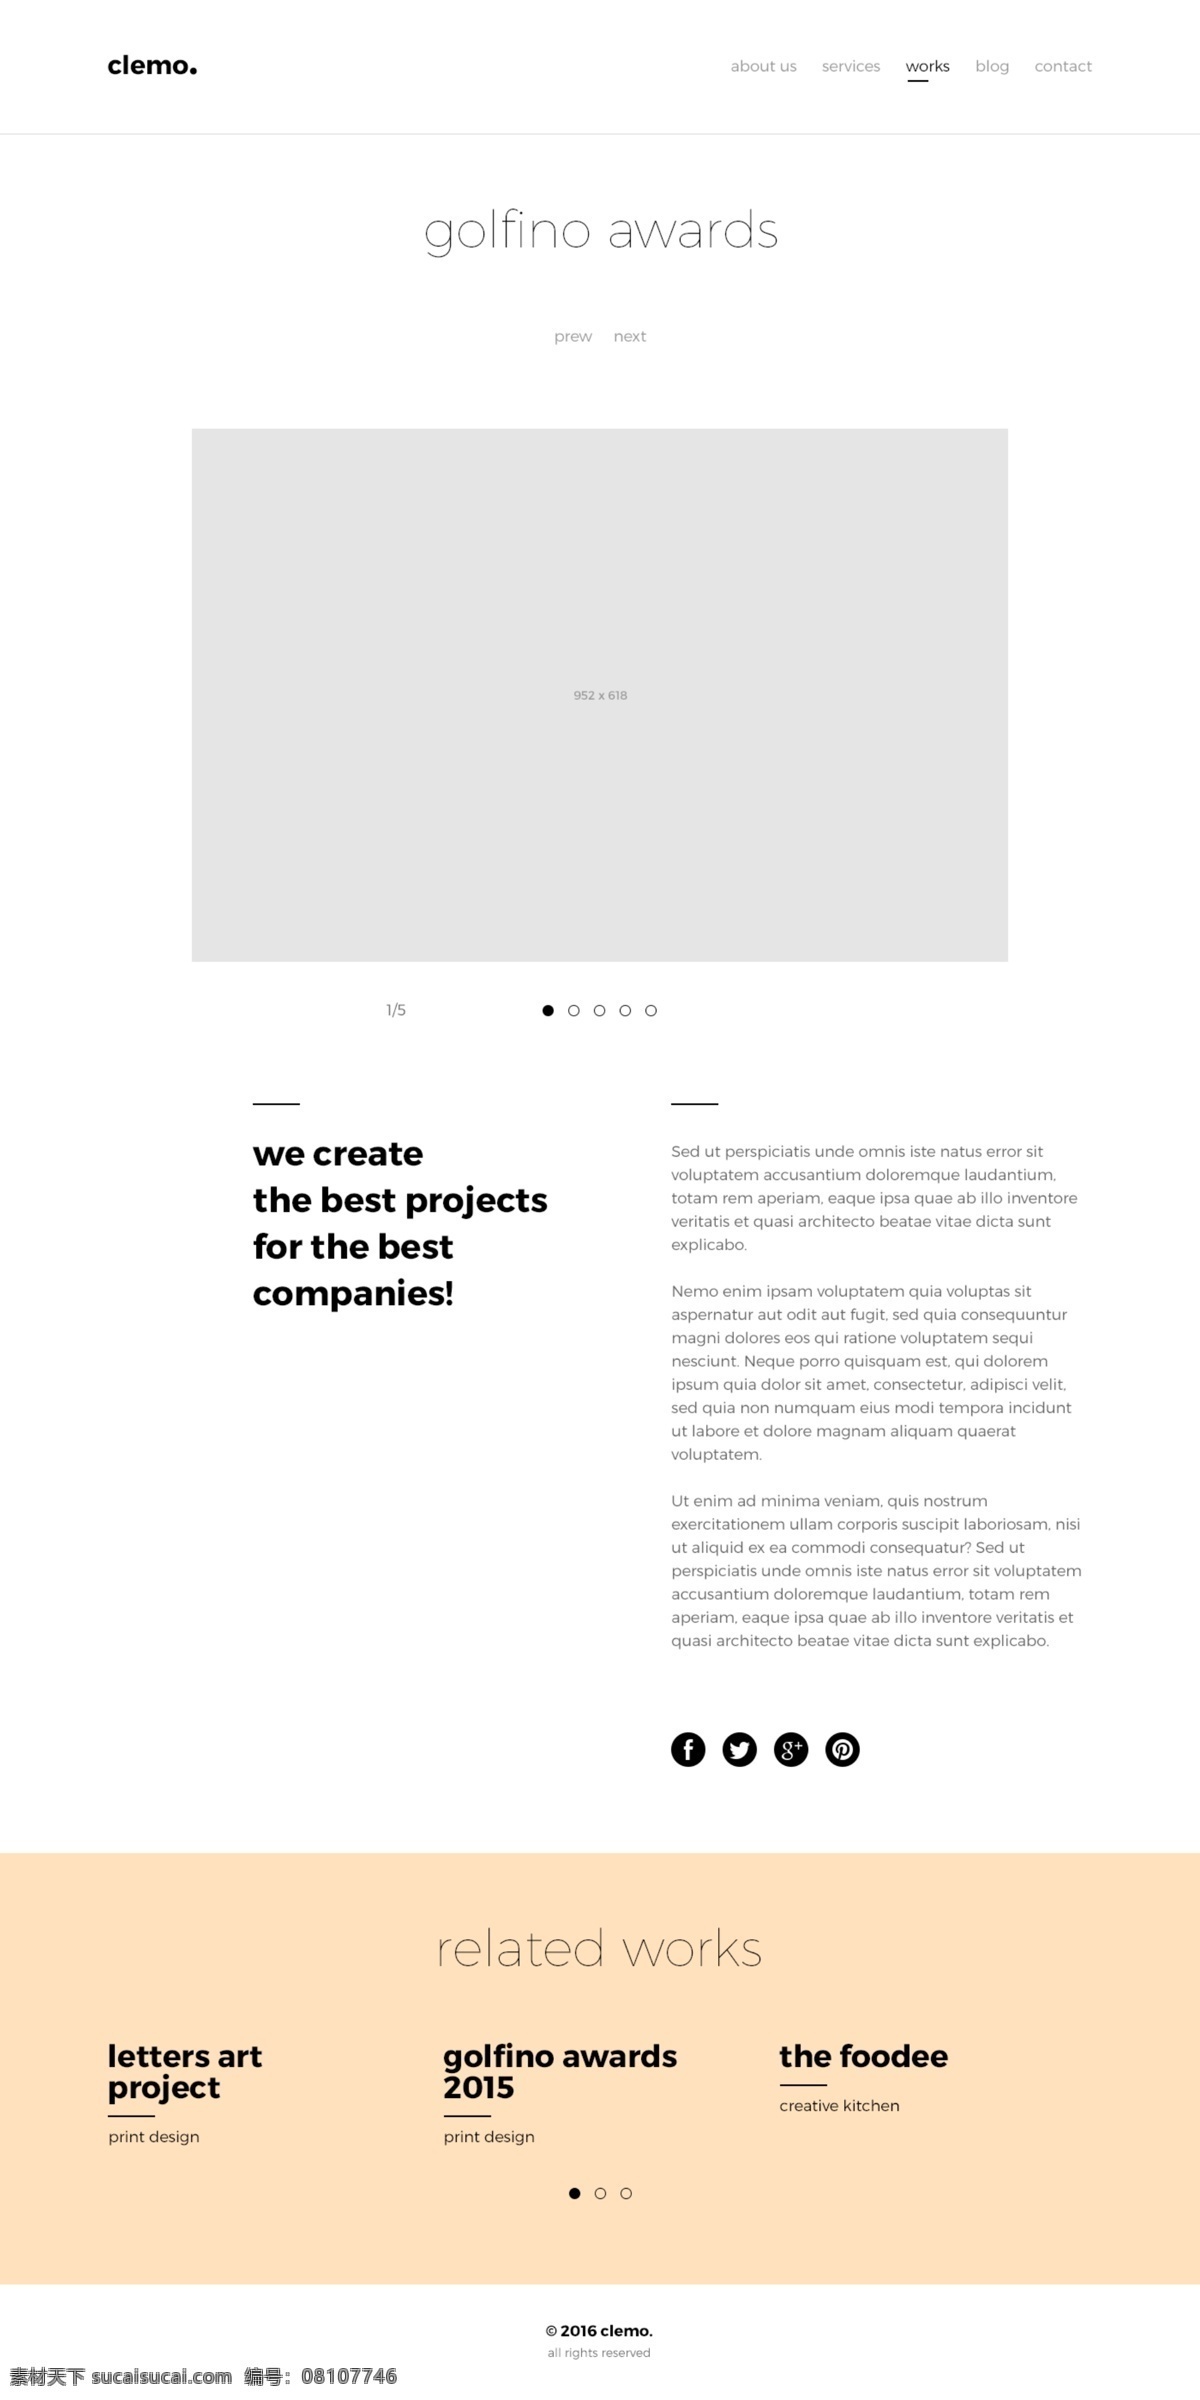 网站素材模板 编辑图形 minimalis 优雅 现代的ps 图象处理软件 专业 模板 网上 网站